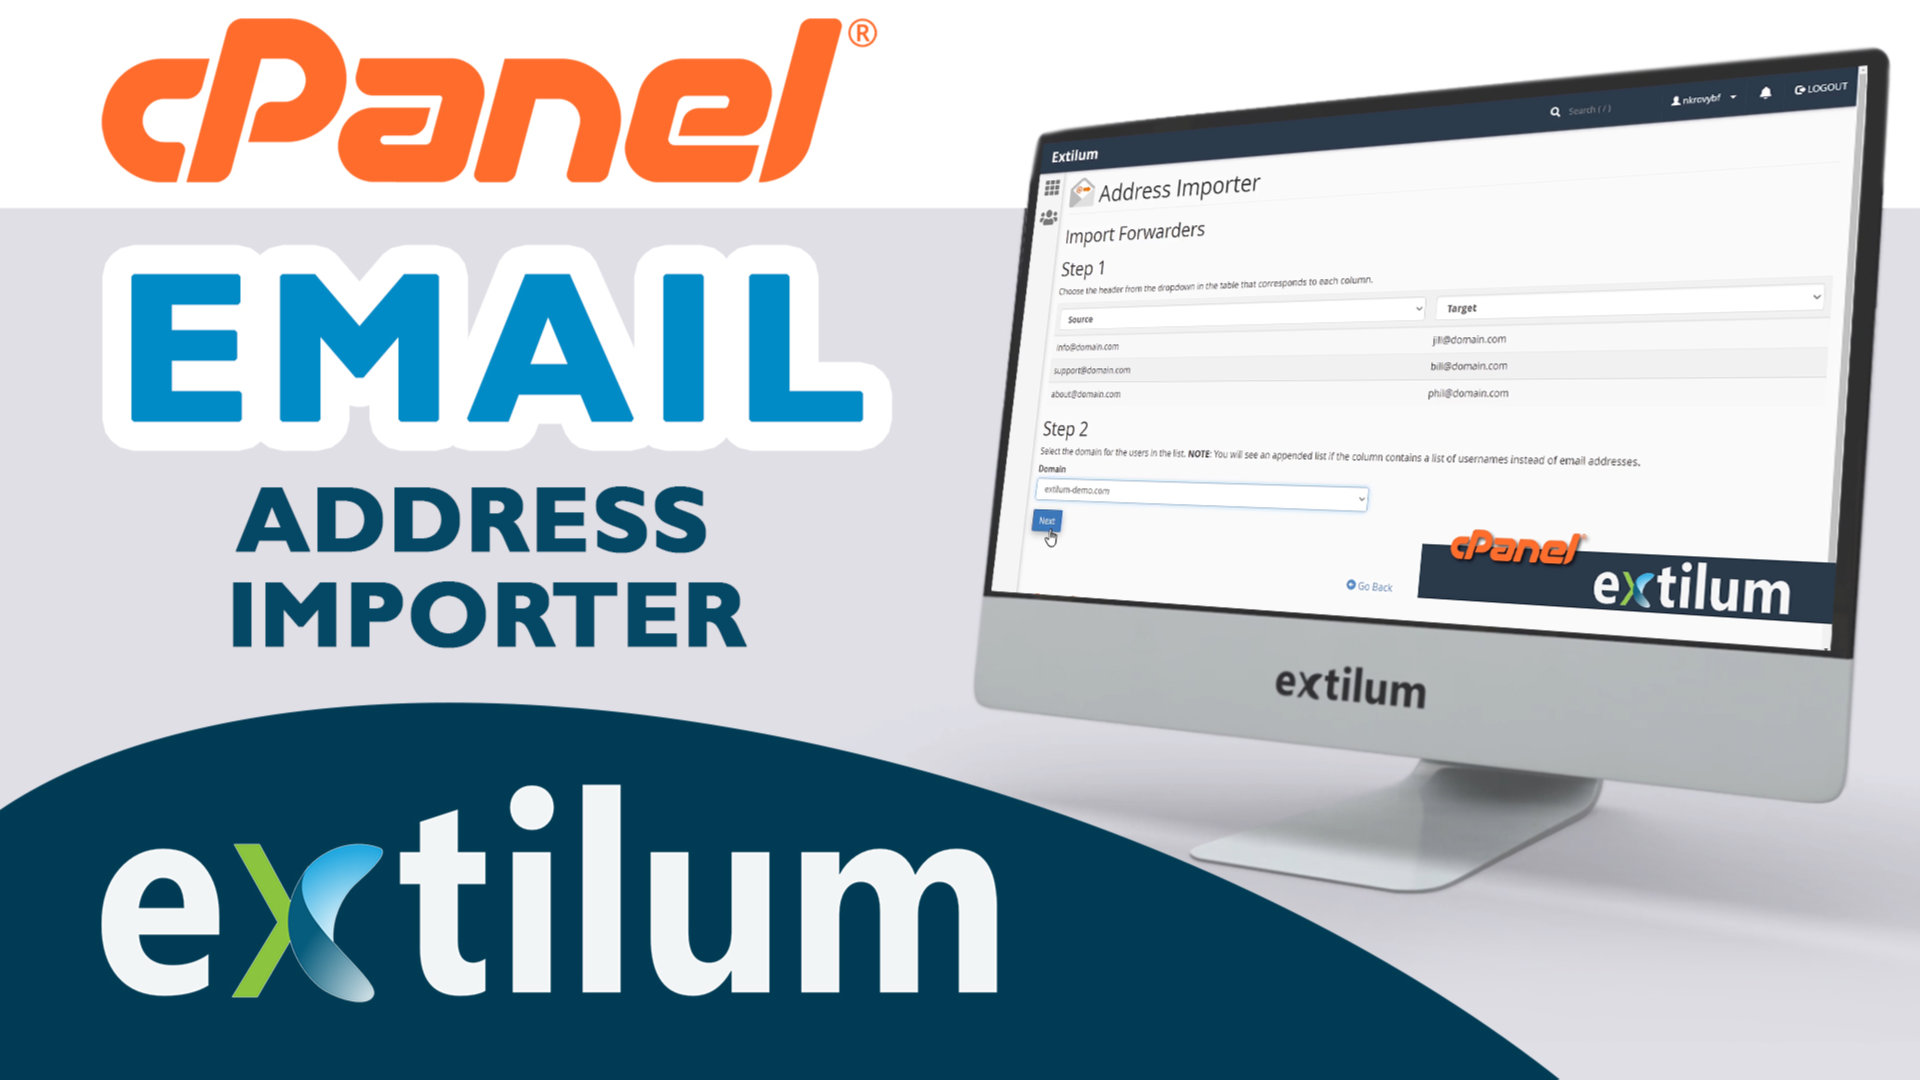 Extilum cPanel -Address Importer